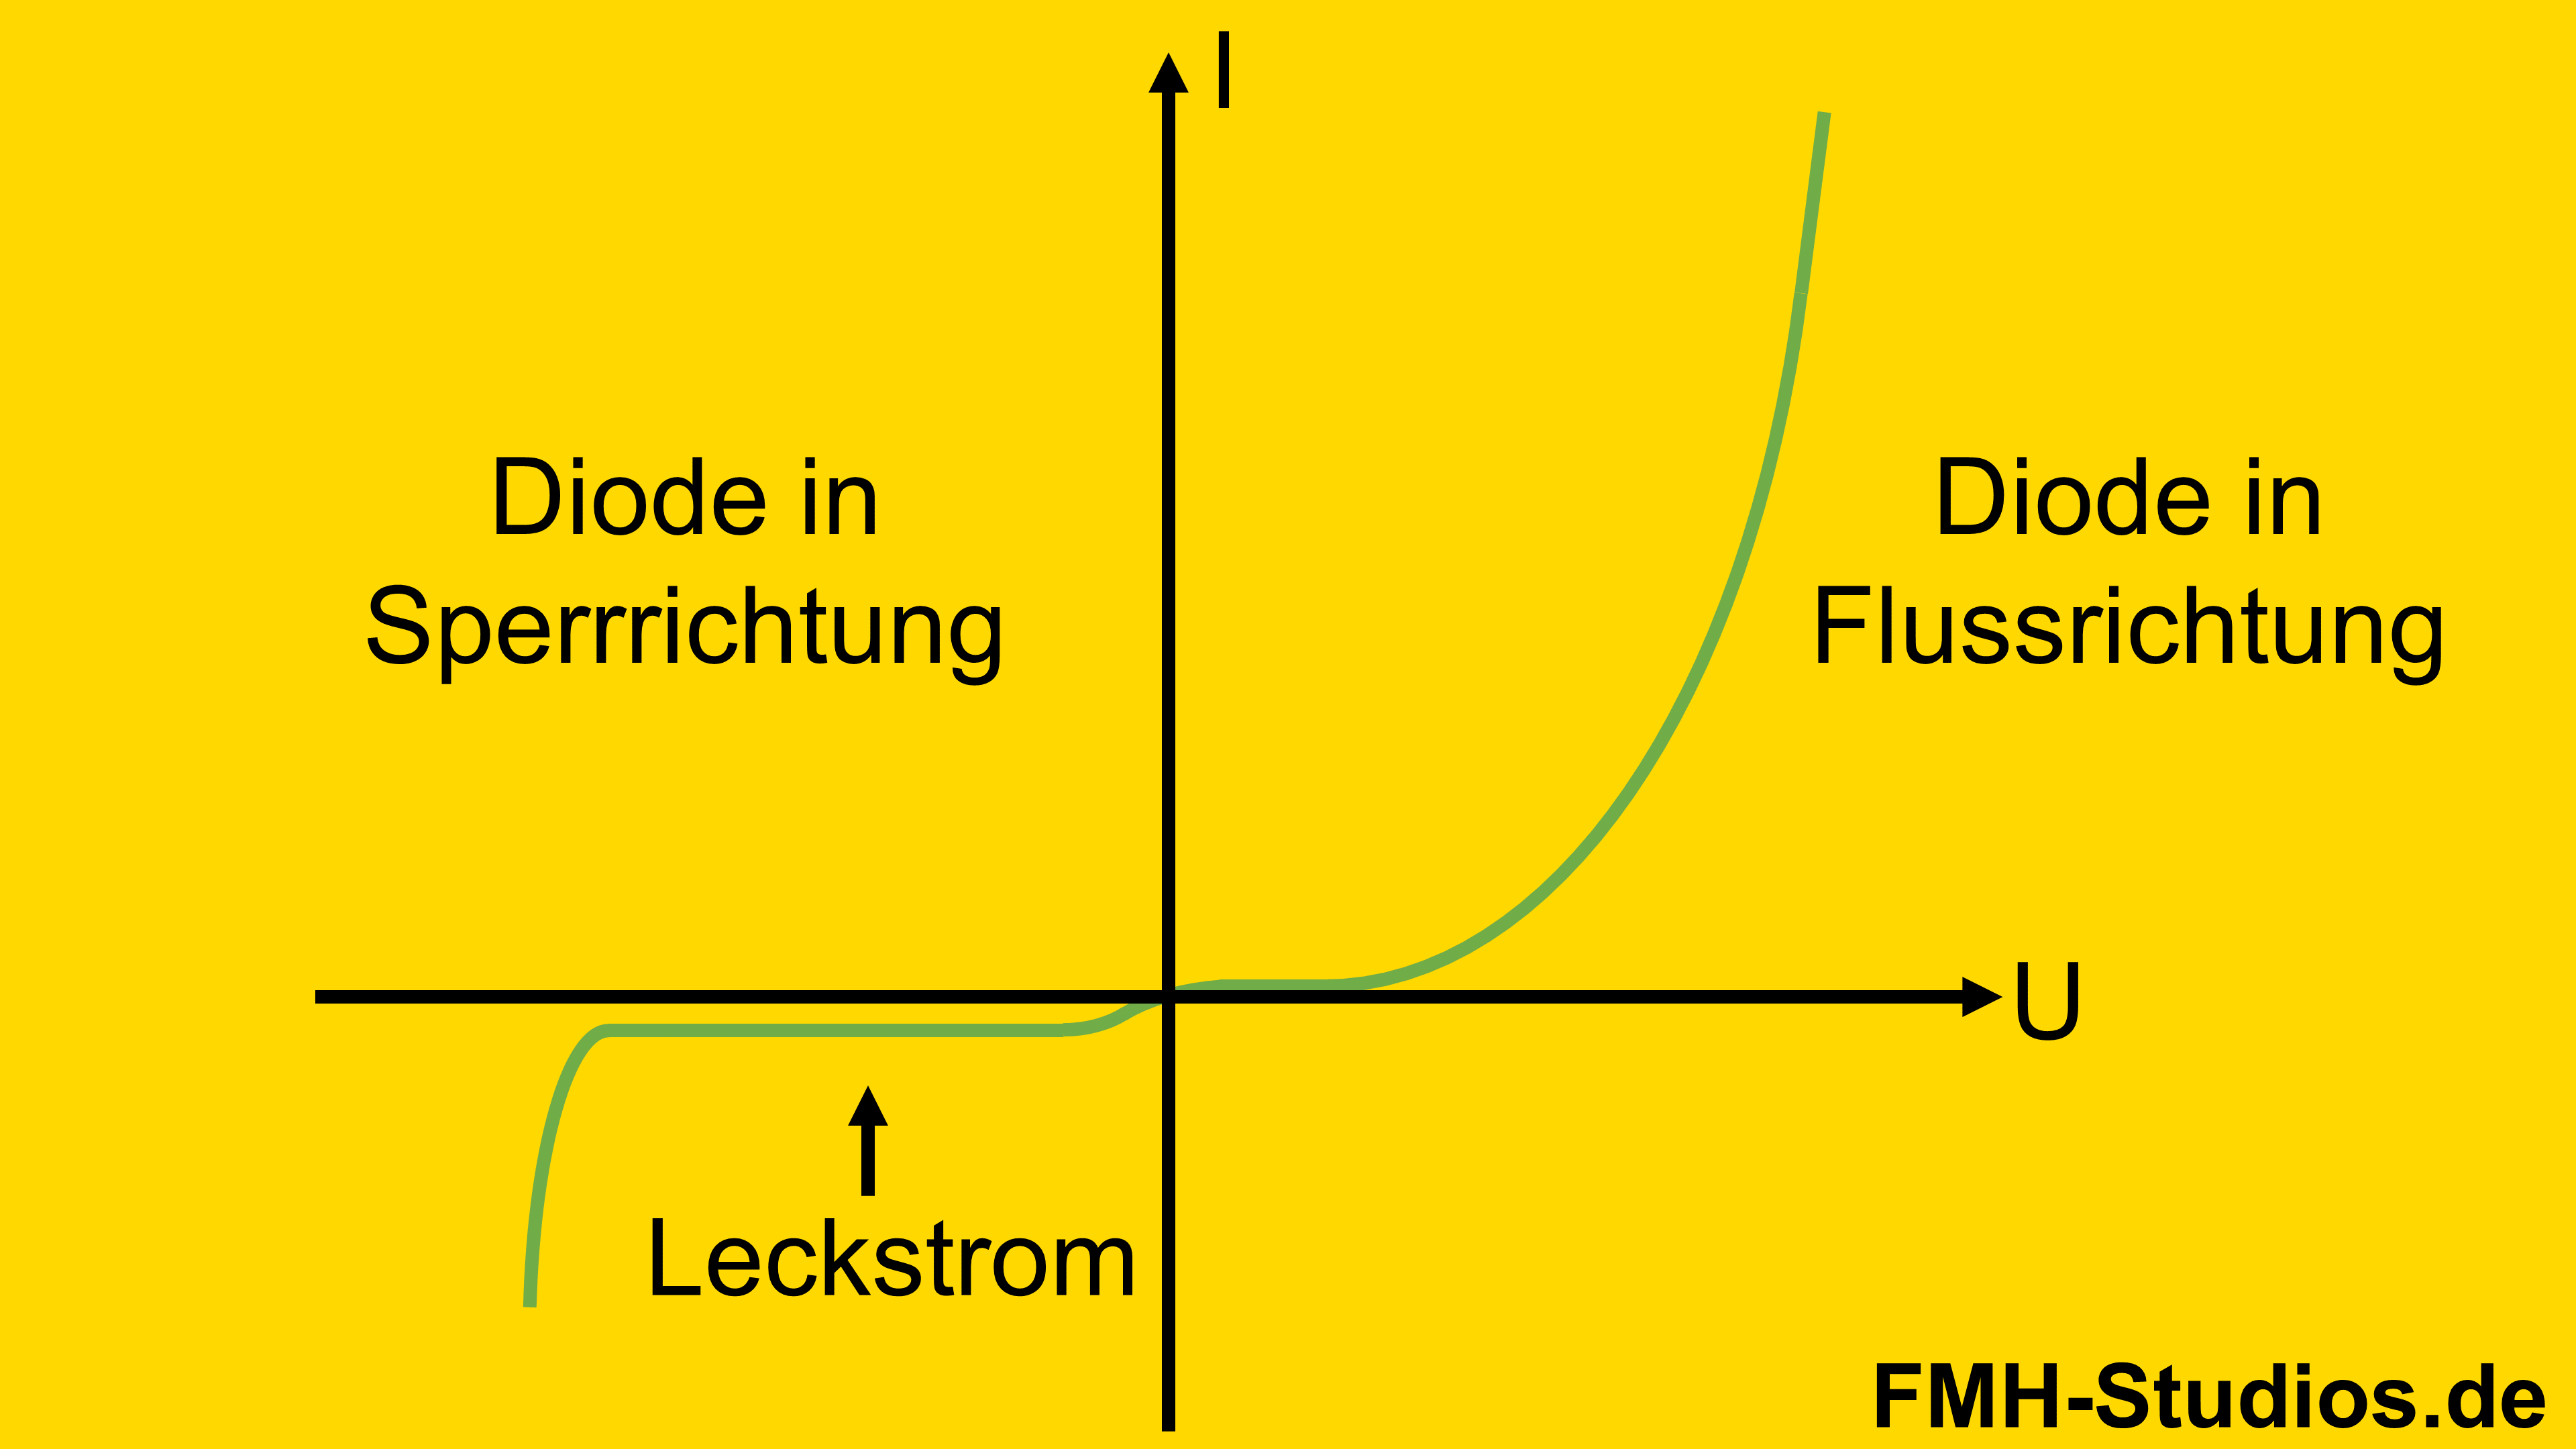 Diode - PN-Übergang - Halbleiter - Sperrrichtung - Sperrbereich - Flussbereich - Durchbruchbereich - Diodenkennlinie - Kennlinie - Leckstrom - Sperrstrom